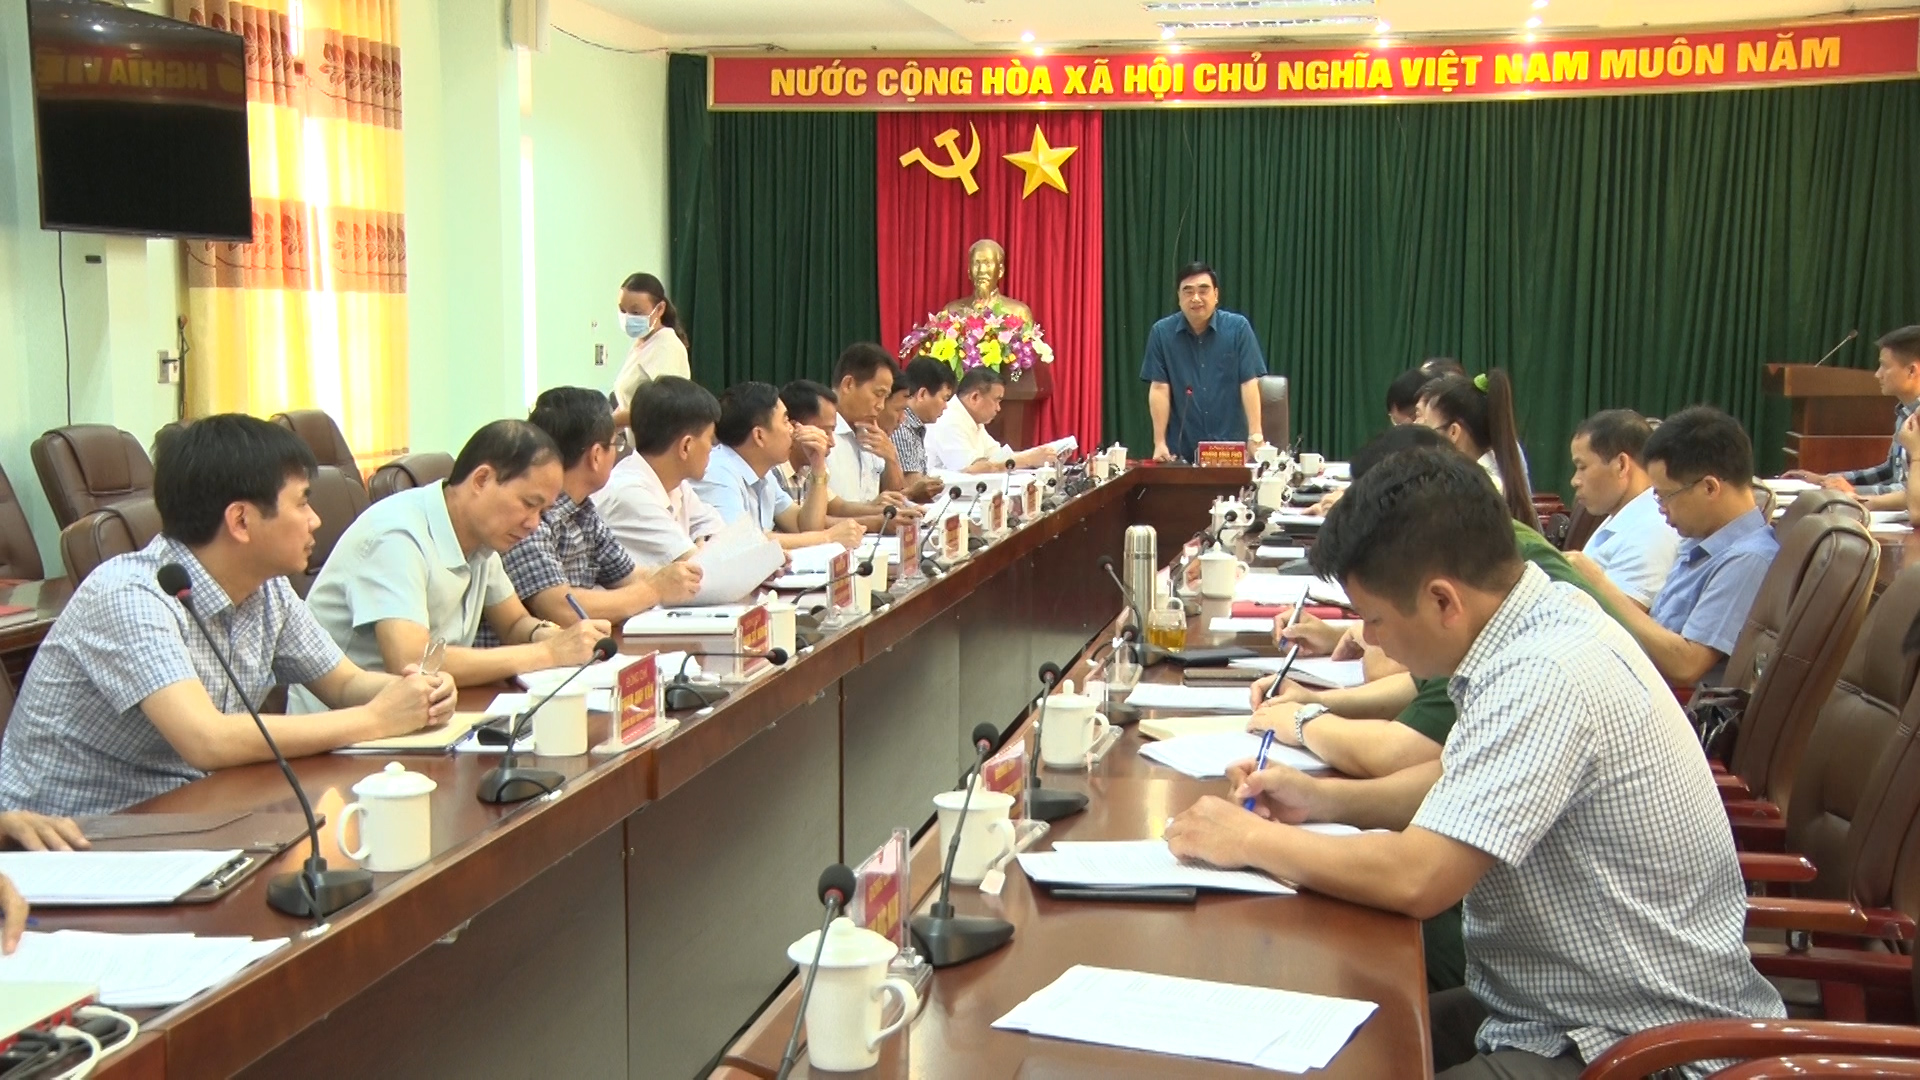 Đoàn công tác số 02 theo quyết định số 575-QĐ/TU của Tỉnh ủy làm việc tại huyện Đồng Văn